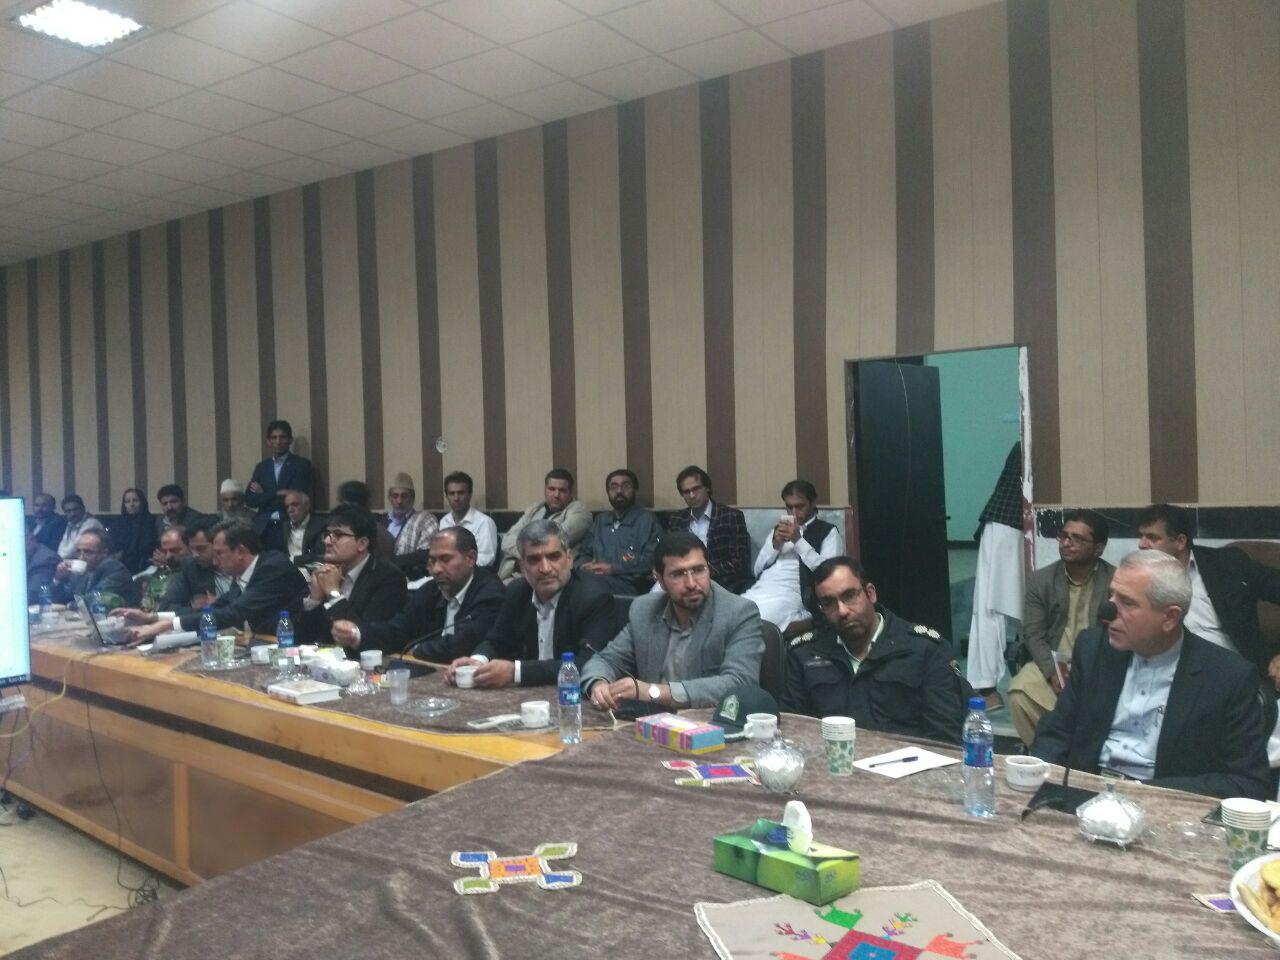 محمدجواد آذری جهرمی وزير ارتباطات و فناوري به شهرستان خاش سفر كرد.